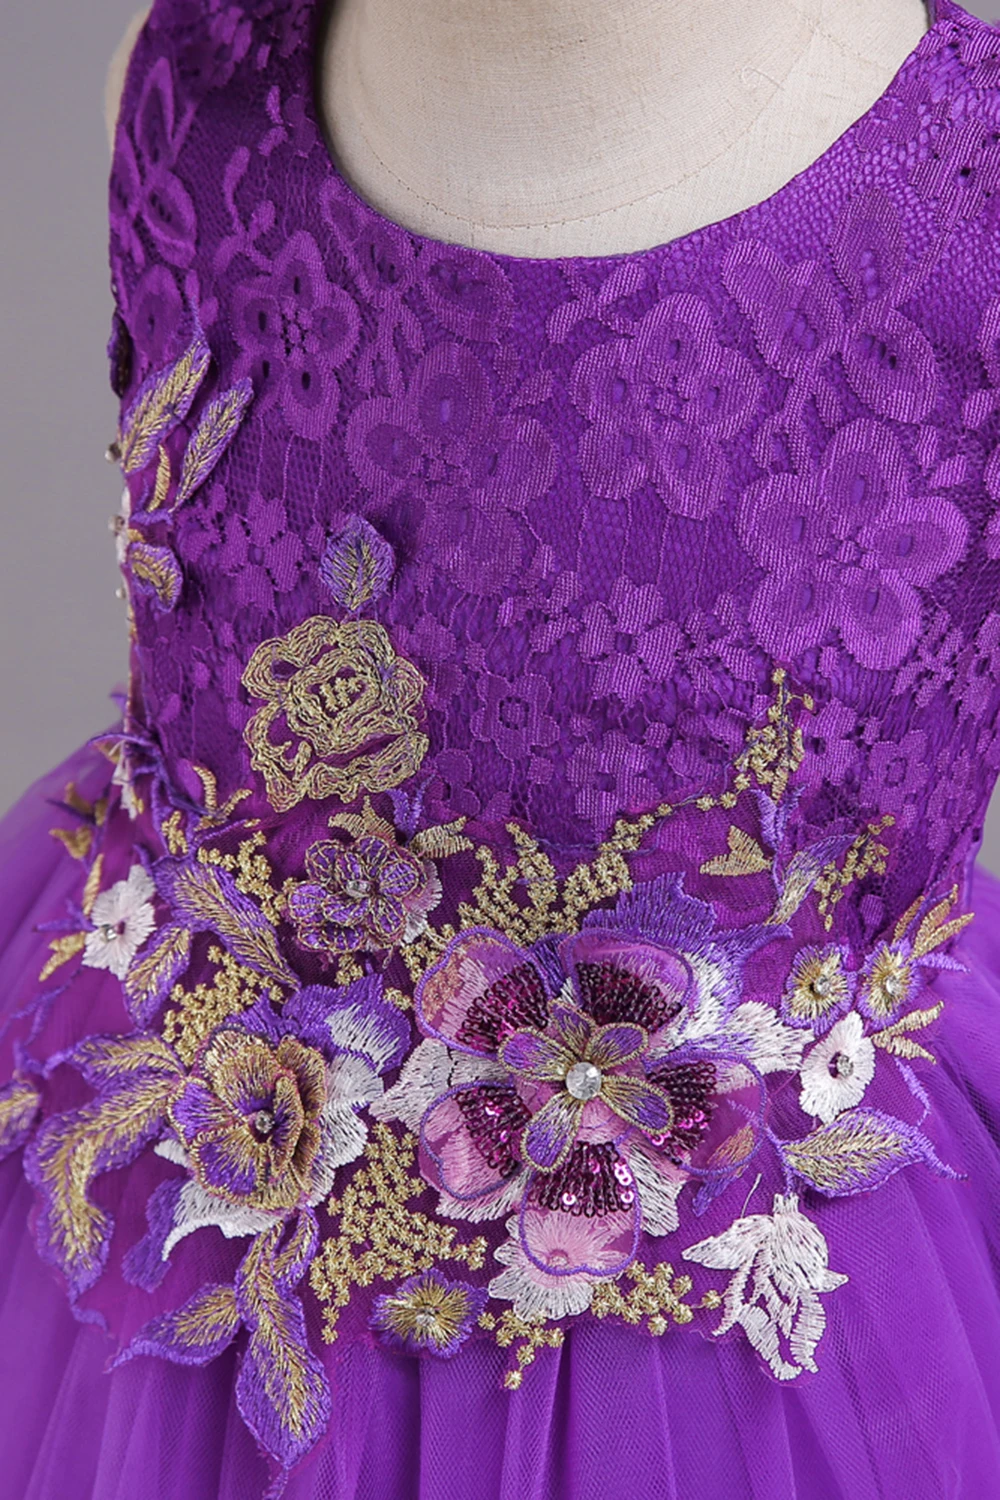 Babyonlinedress Тюль Кружева Аппликации для девочек в цветочек платья Длинные Связь платье для свадьбы Вечерние платья для причастия